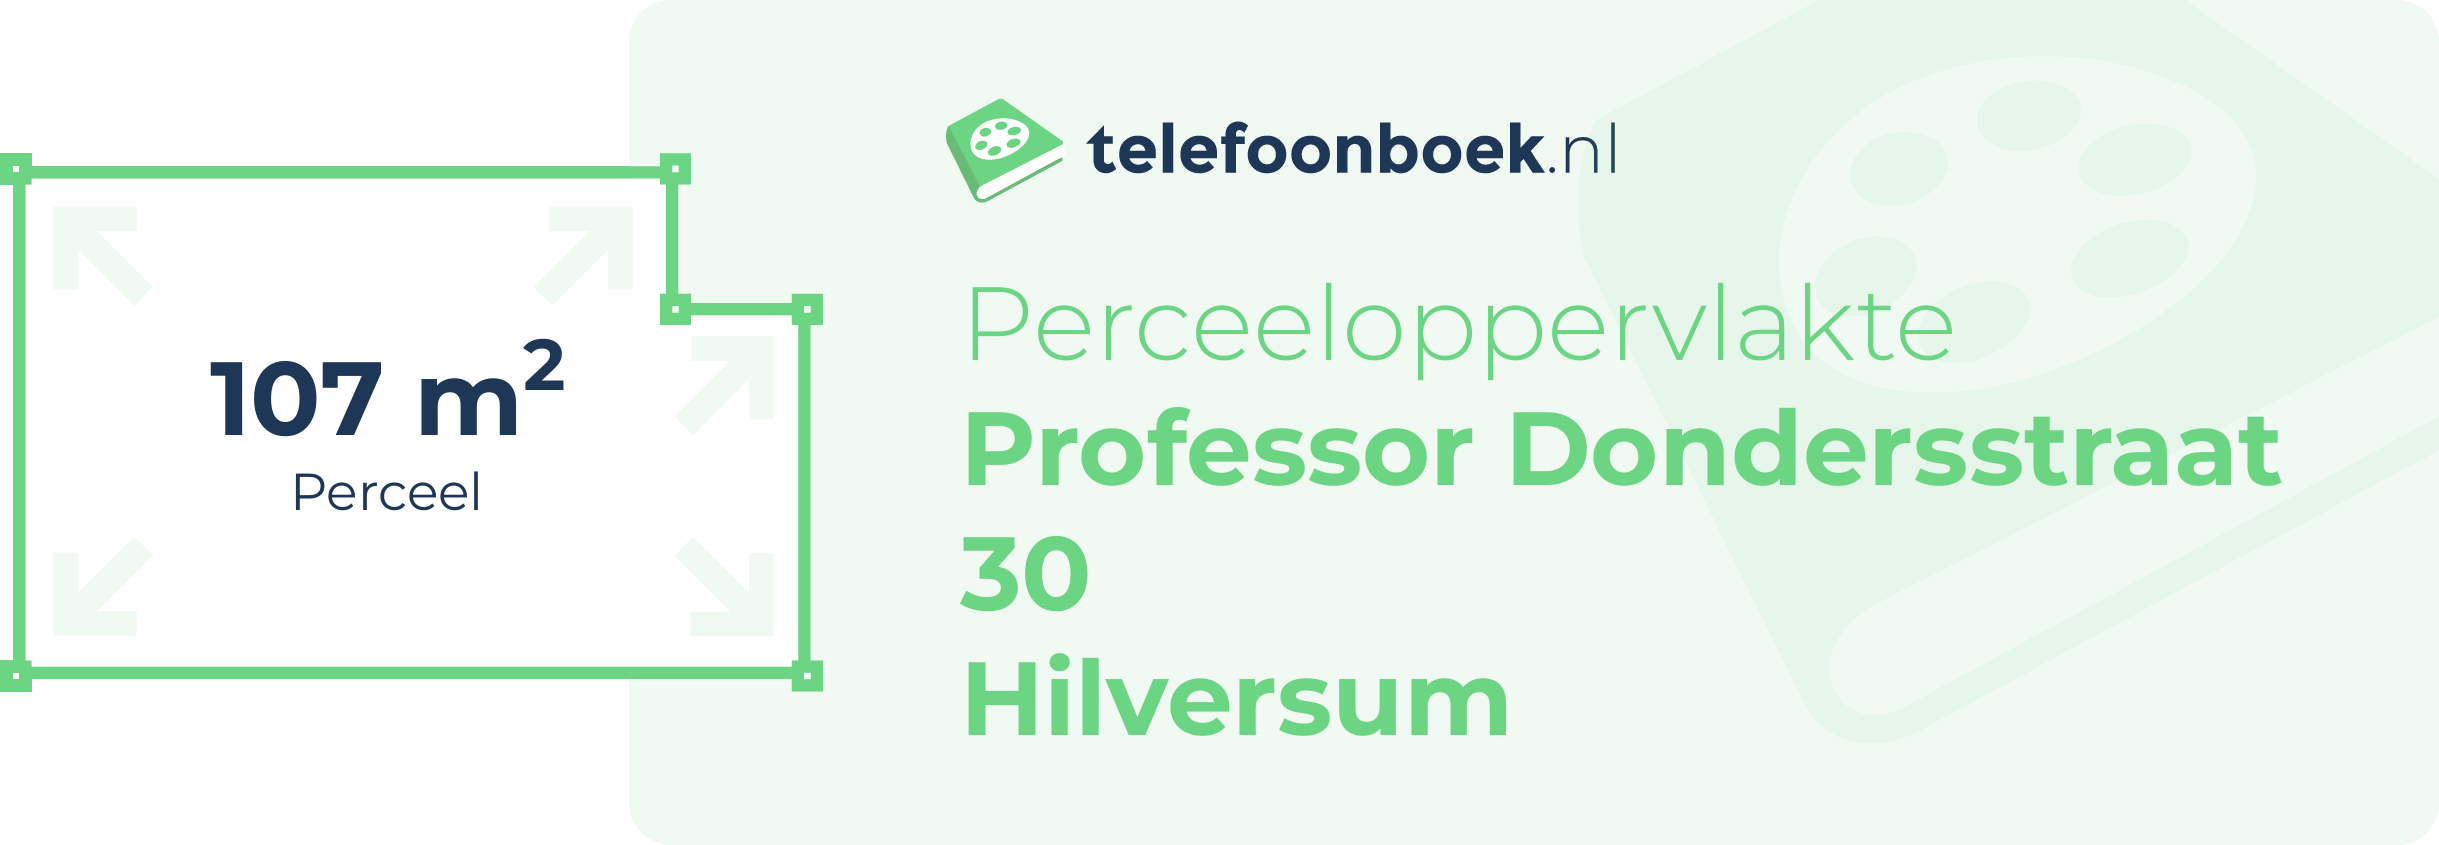 Perceeloppervlakte Professor Dondersstraat 30 Hilversum